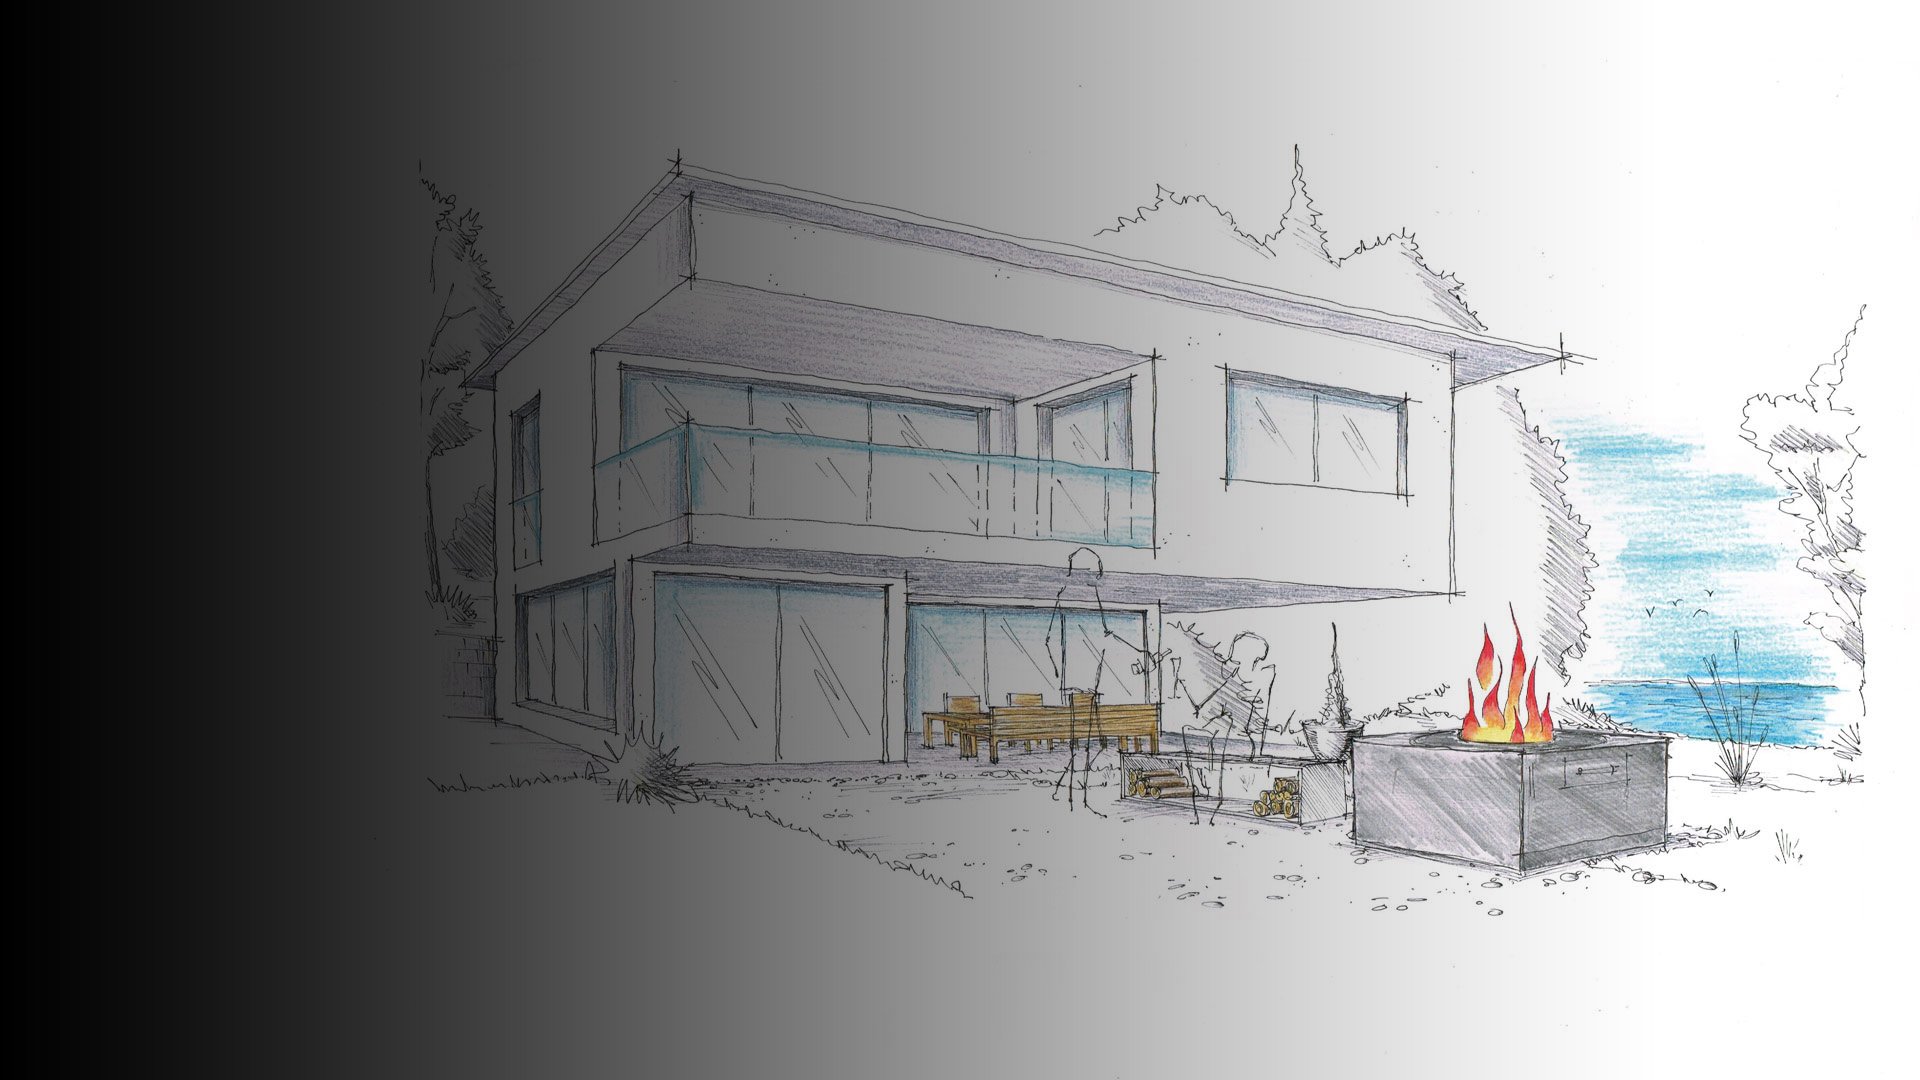 Arichitekturskizze des swissfirecube primeline vor einem modernen Einfamilienhaus.